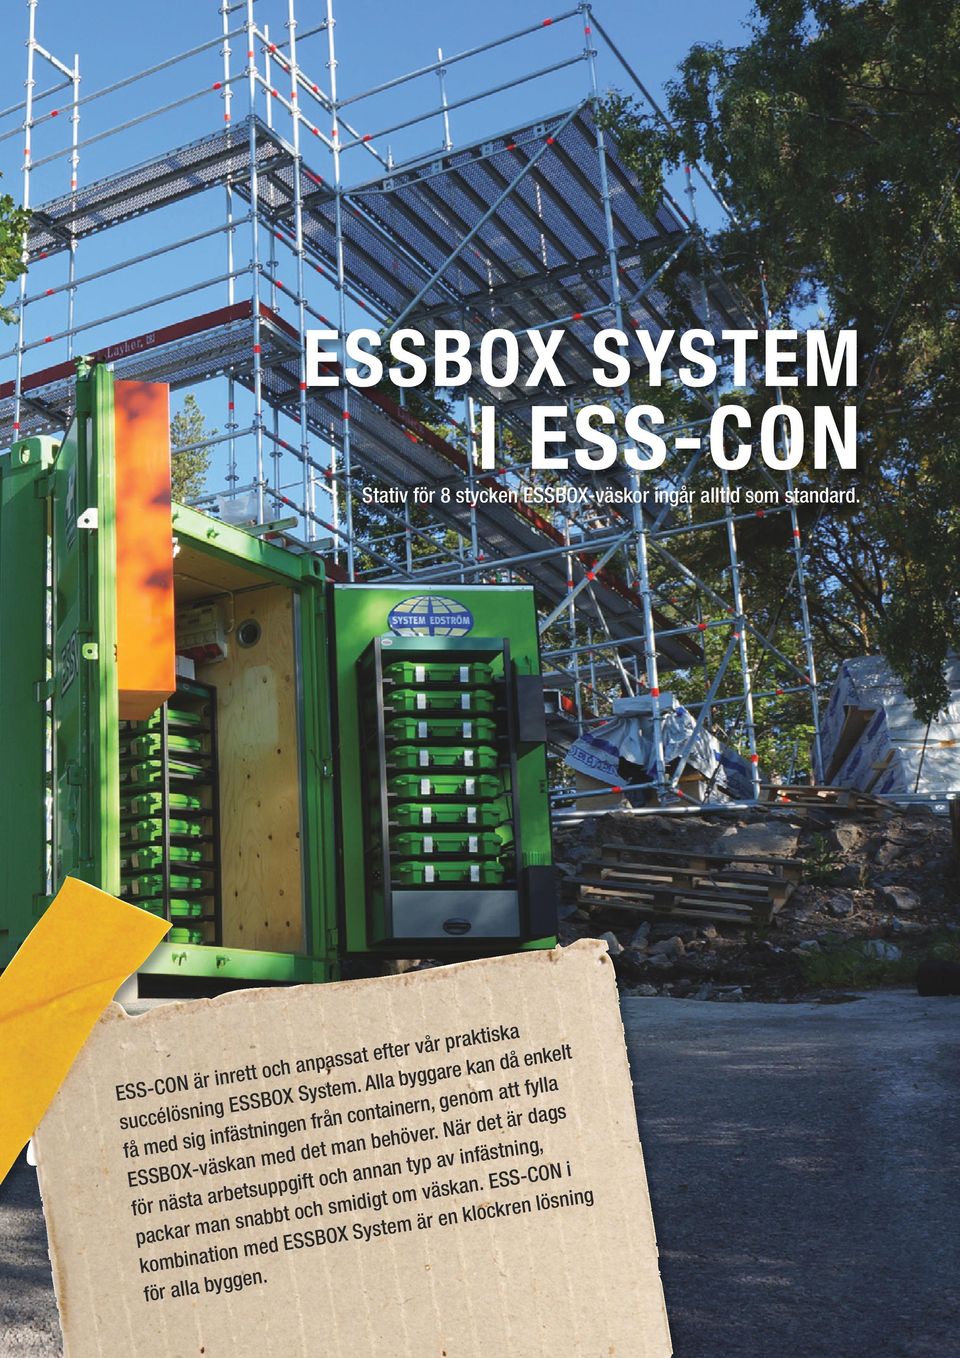 Alla byggare kan då enkelt få med sig infästningen från containern, genom att fylla ESSBOX-väskan med det man behöver.